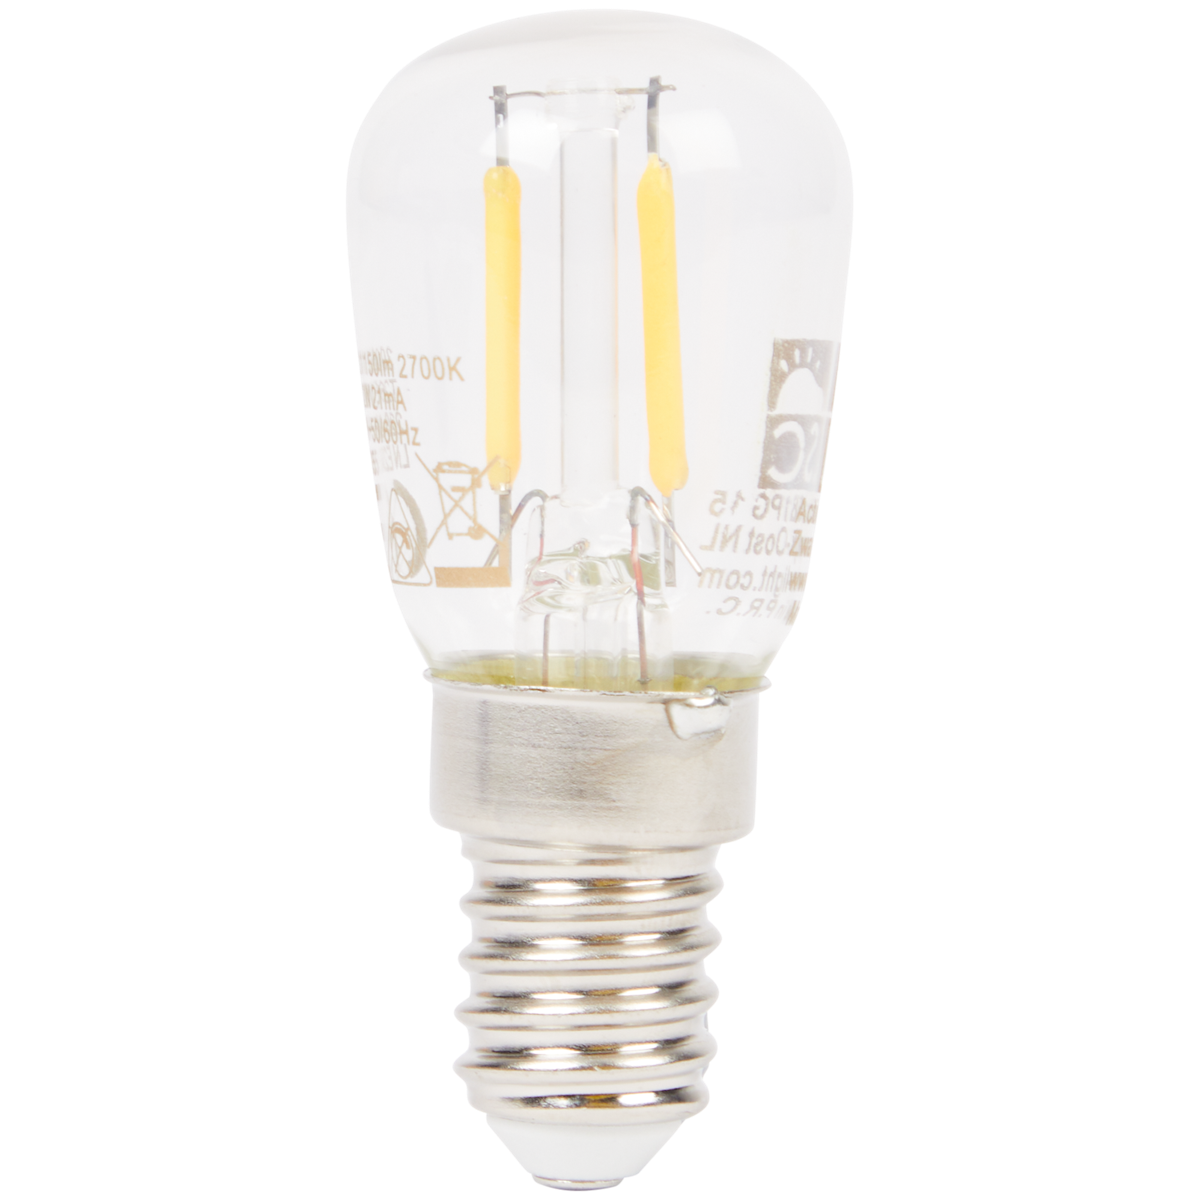 Ampoule LED LSC